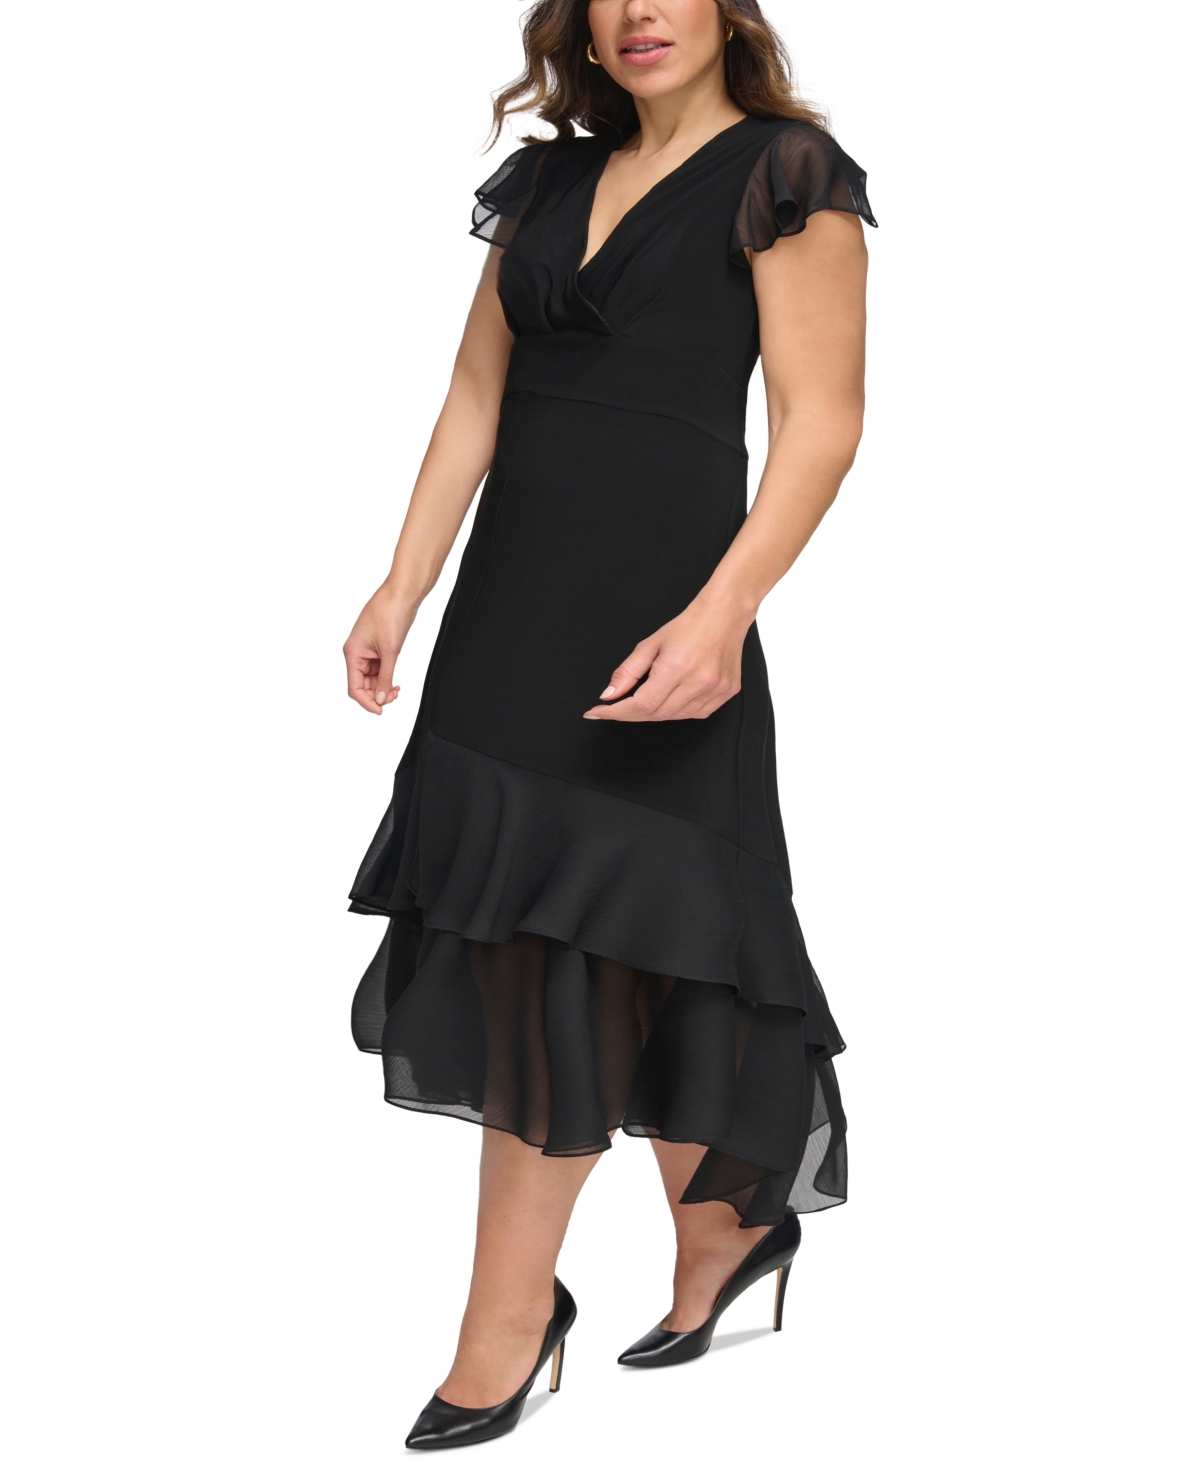 Vintage Evening Dresses, Vintage Formal Dresses Tommy Hilfiger Plus Size Flutter-Sleeve A-Line Dress - Black $129.00 AT vintagedancer.com